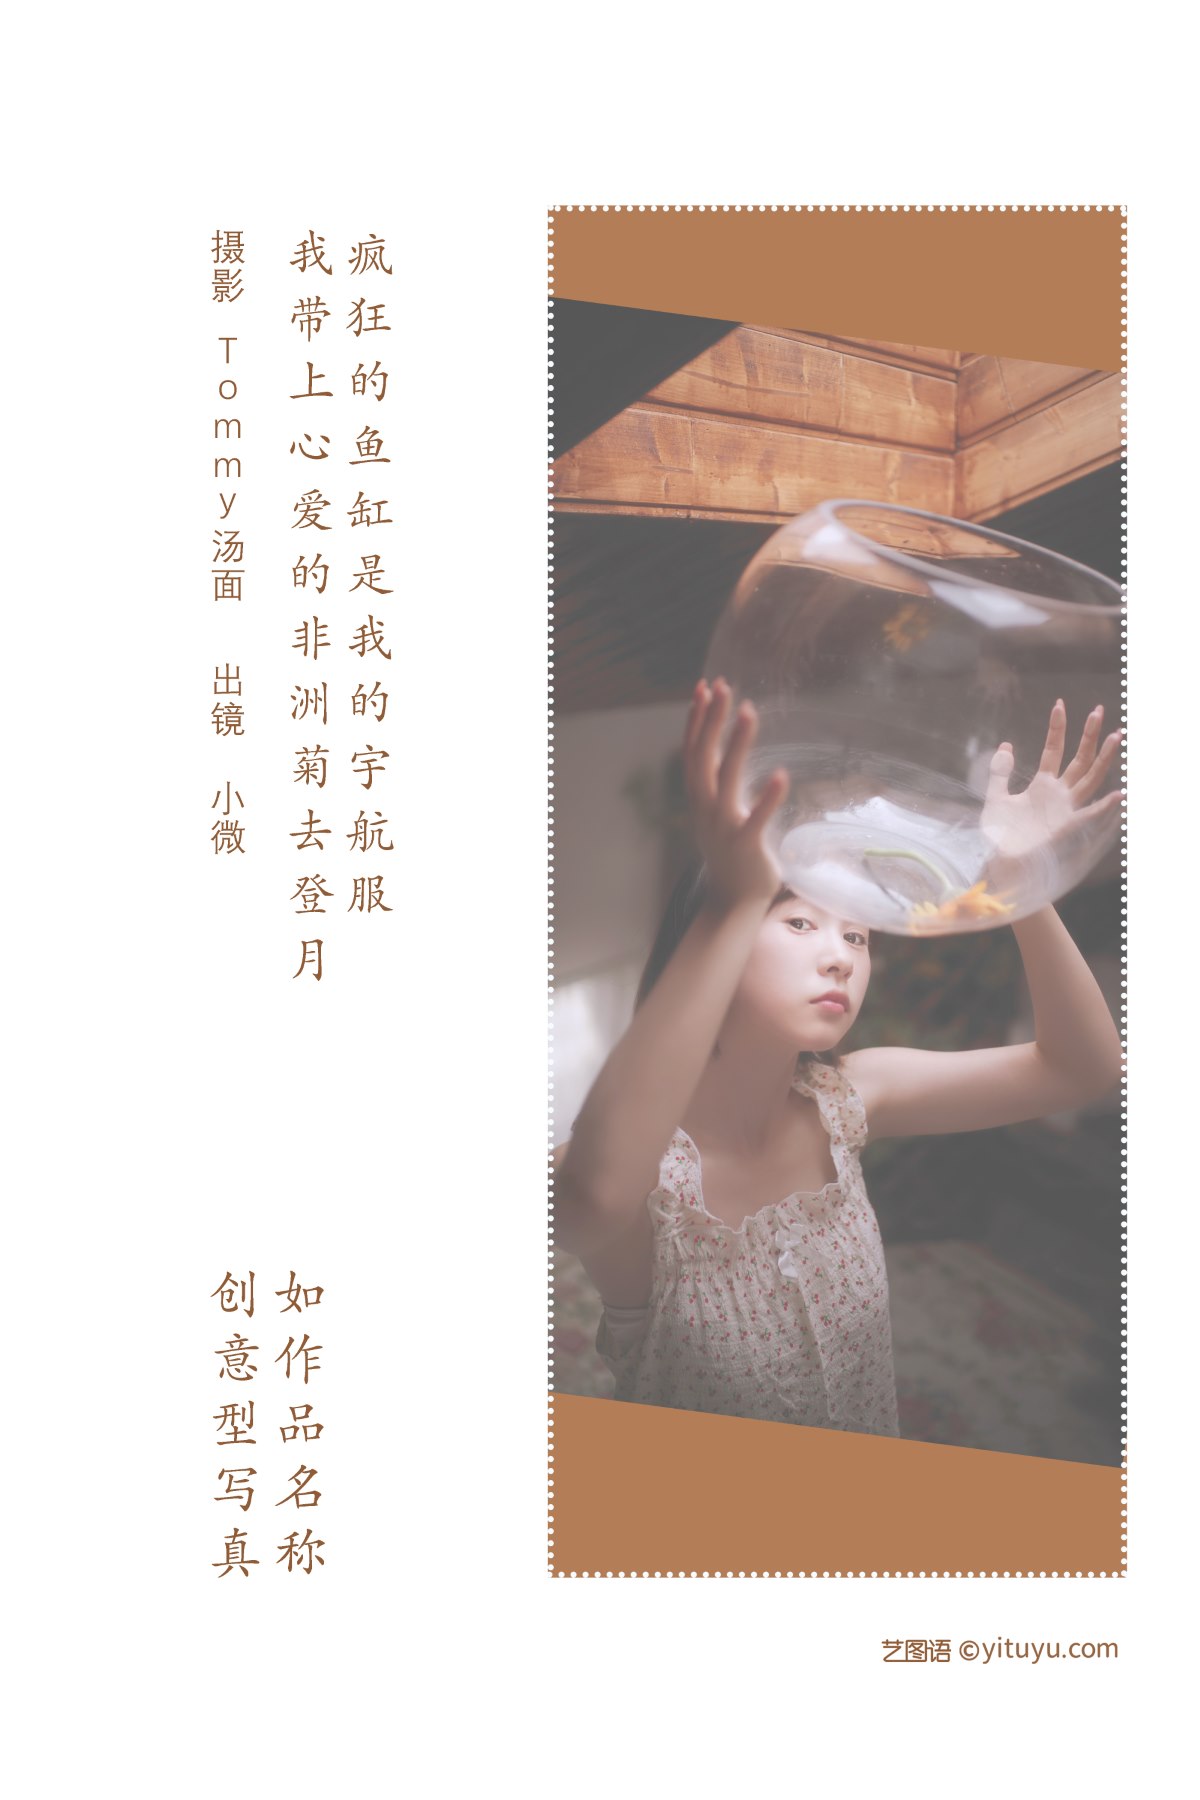 YiTuYu艺图语 Vol 2172 Xiao Wei 0001 5923788096.jpg